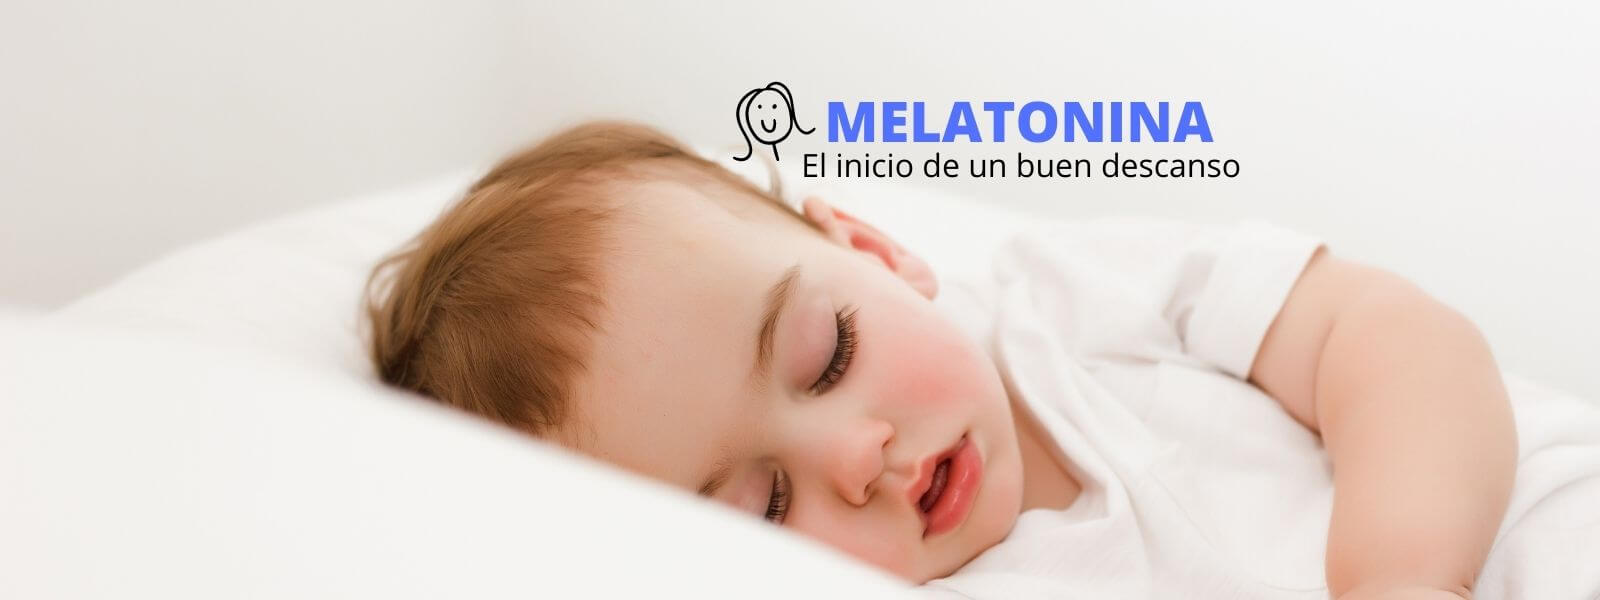 ¿Qué es la Melatonina y para qué Sirve? 7 Beneficios Comprobados